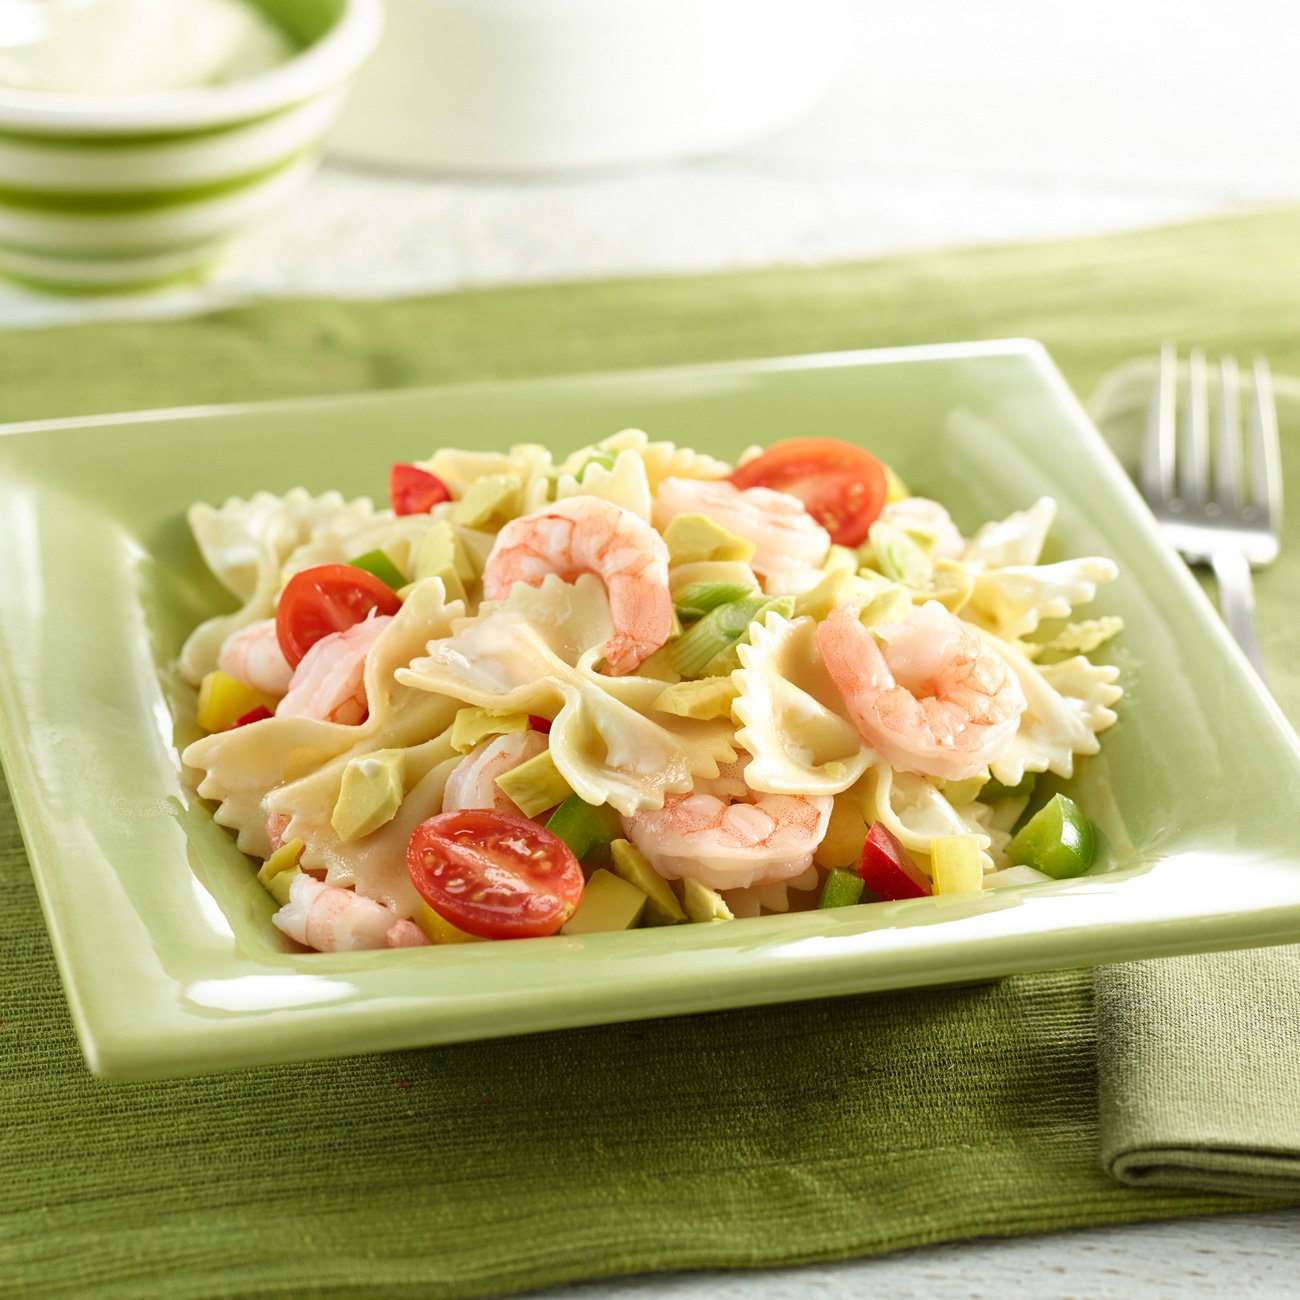 Avocado & Shrimp Pasta Salad Recipe from H-E-B